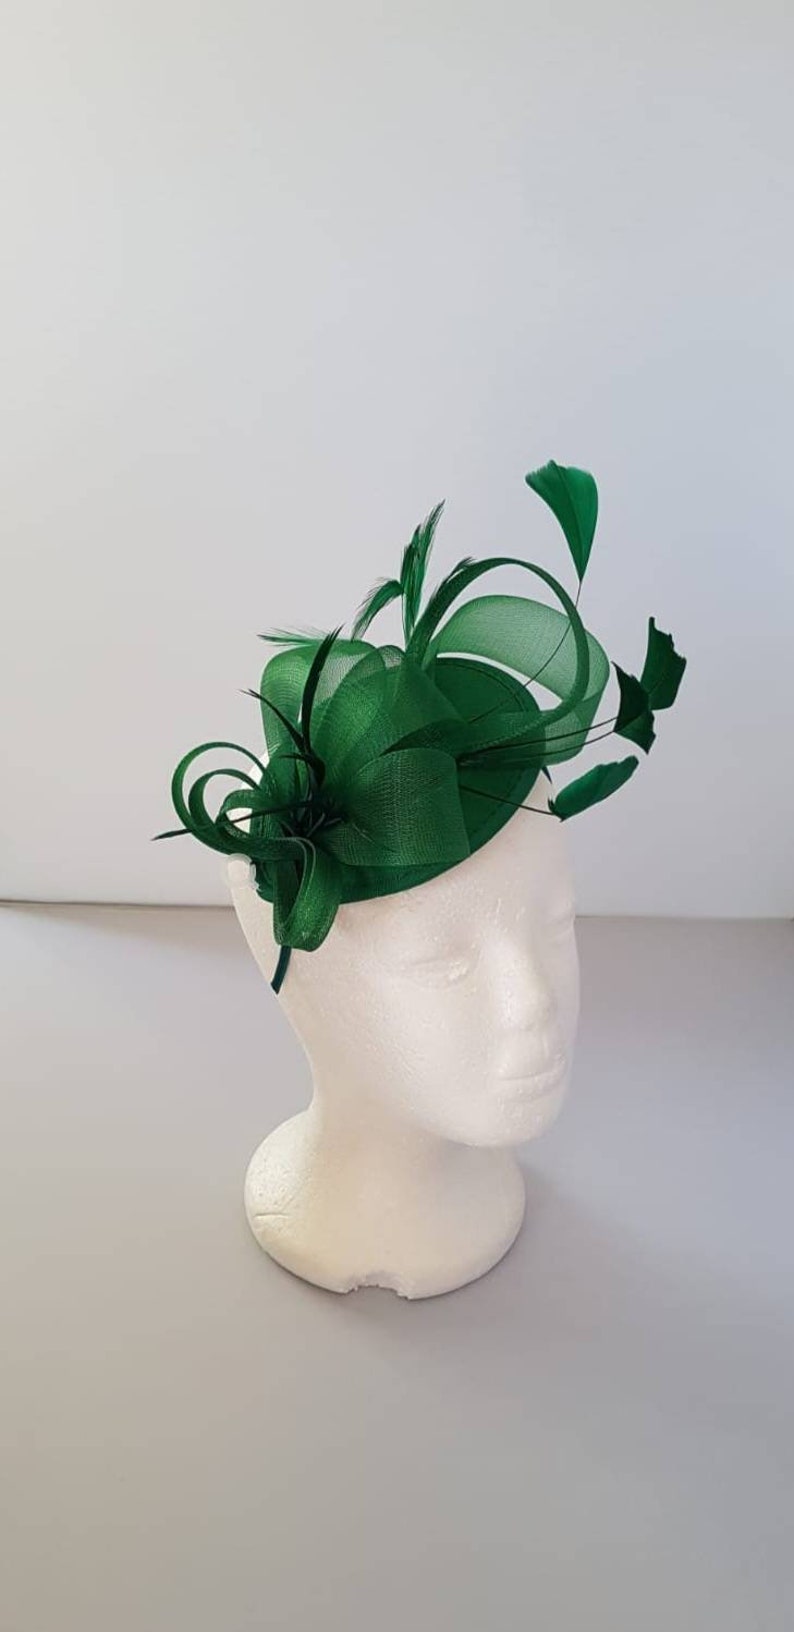 Neuer grüner Fascinator Hatinator mit Stirnband für Hochzeiten, Rennen, Ascot, Kentucky Derby, Melbourne Cup kleine Größe Bild 2